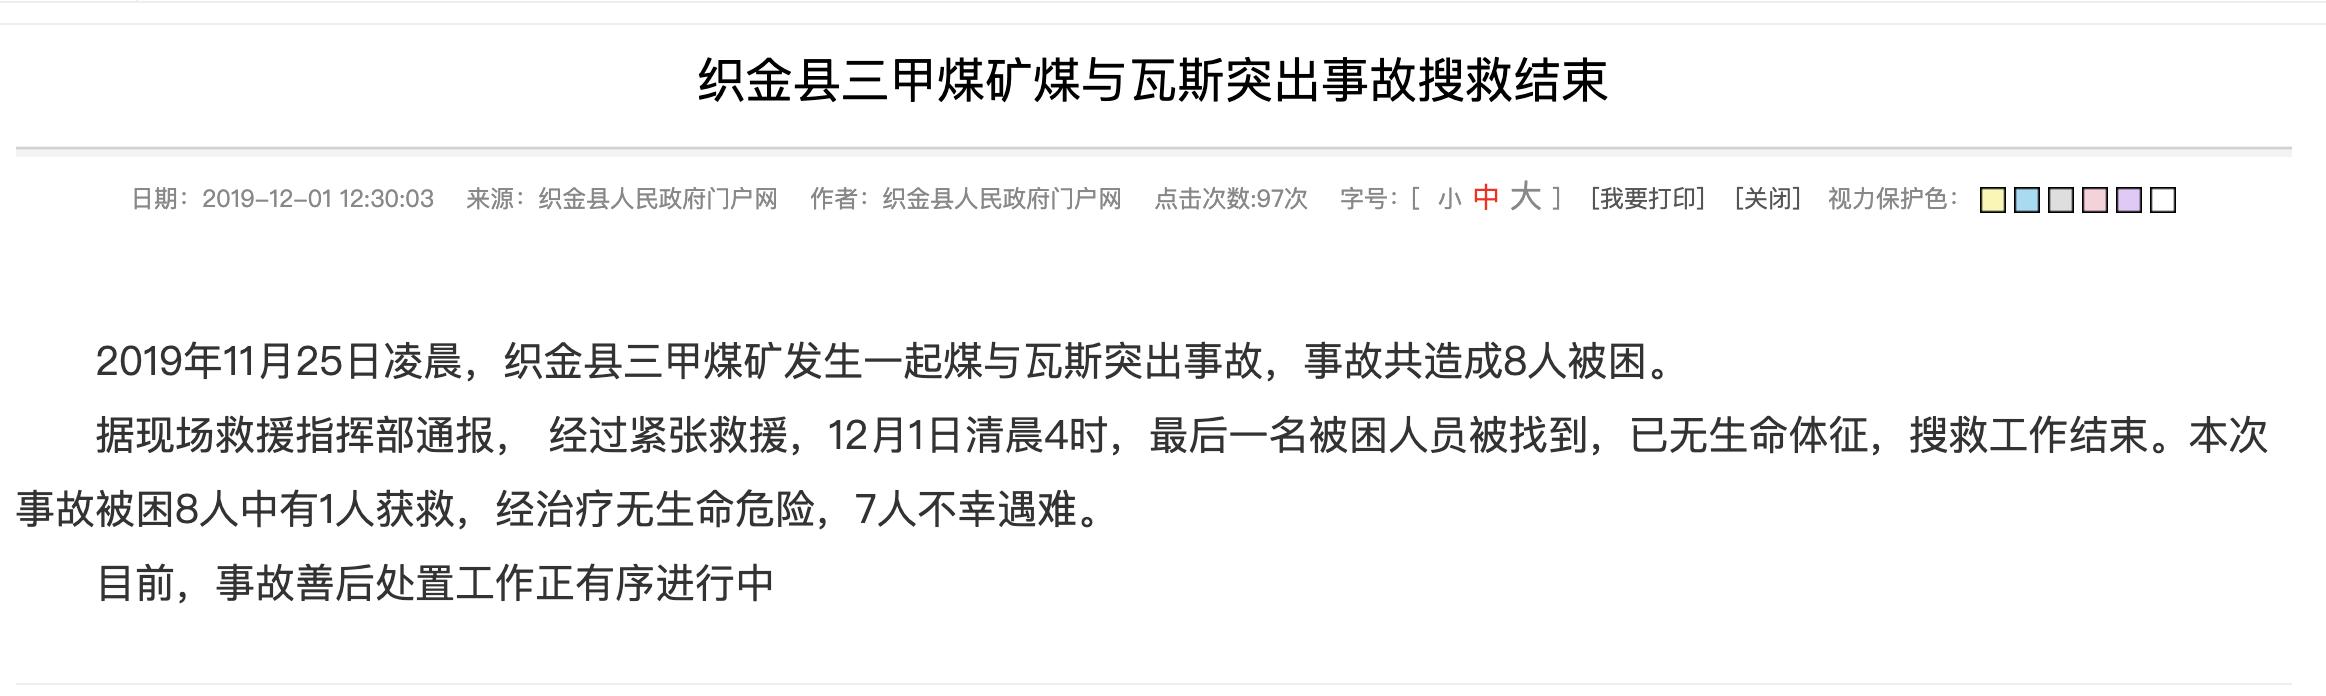 贵州煤矿7人遇难事件始末贵州煤矿7人遇难最新进展